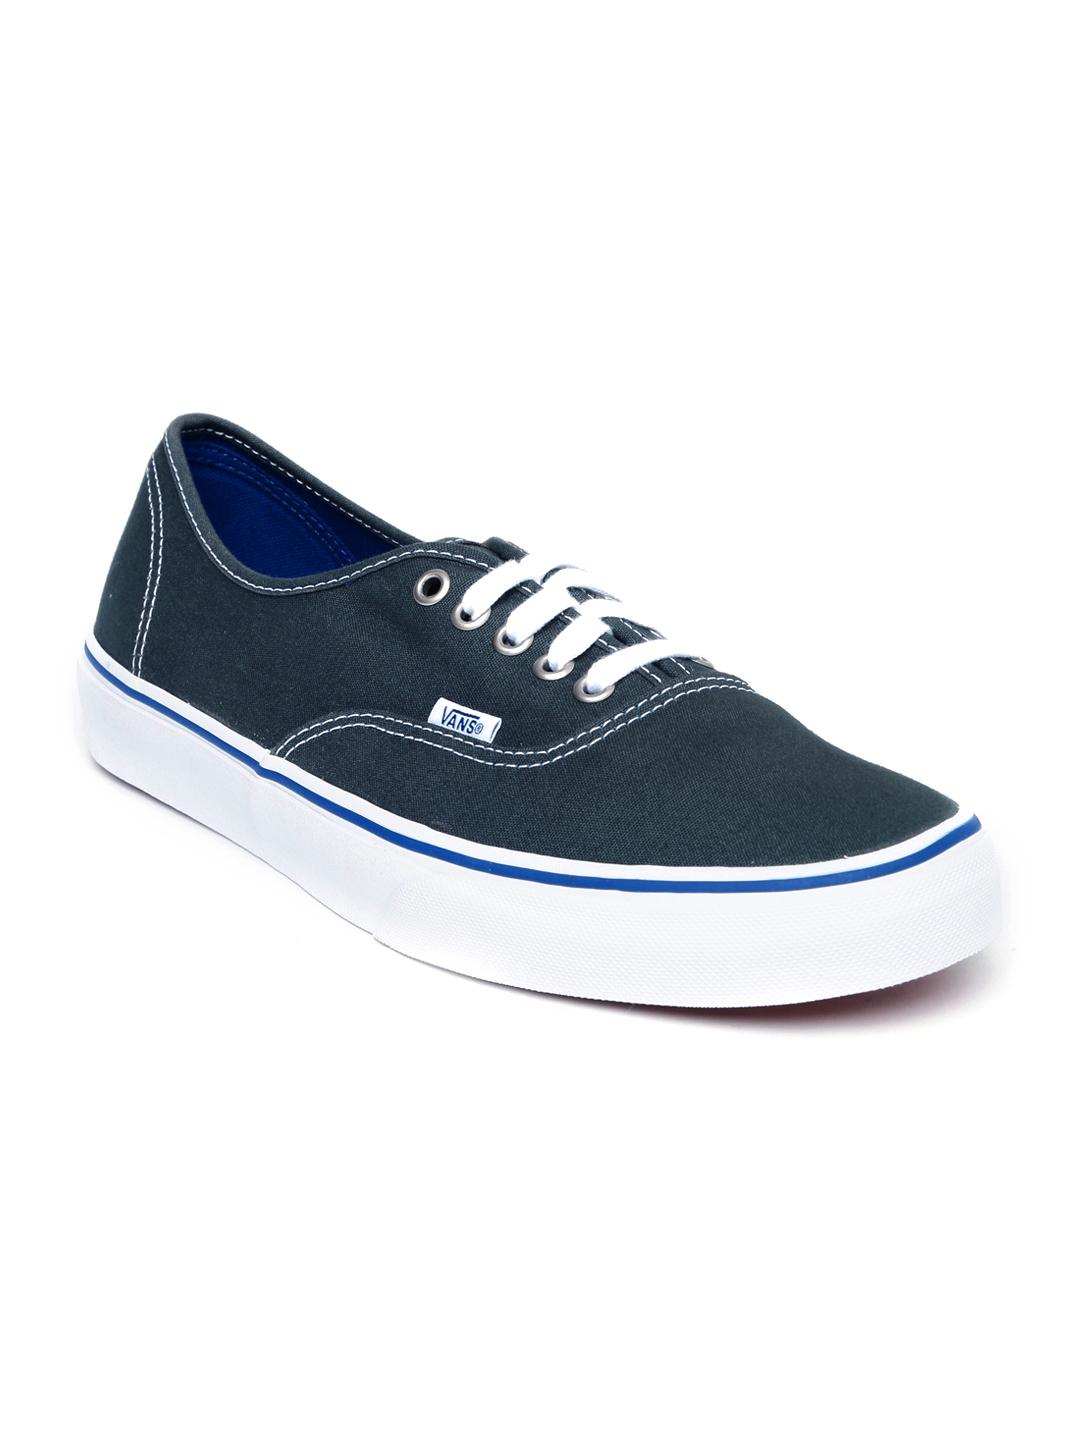 vans unisex blue casual shoes